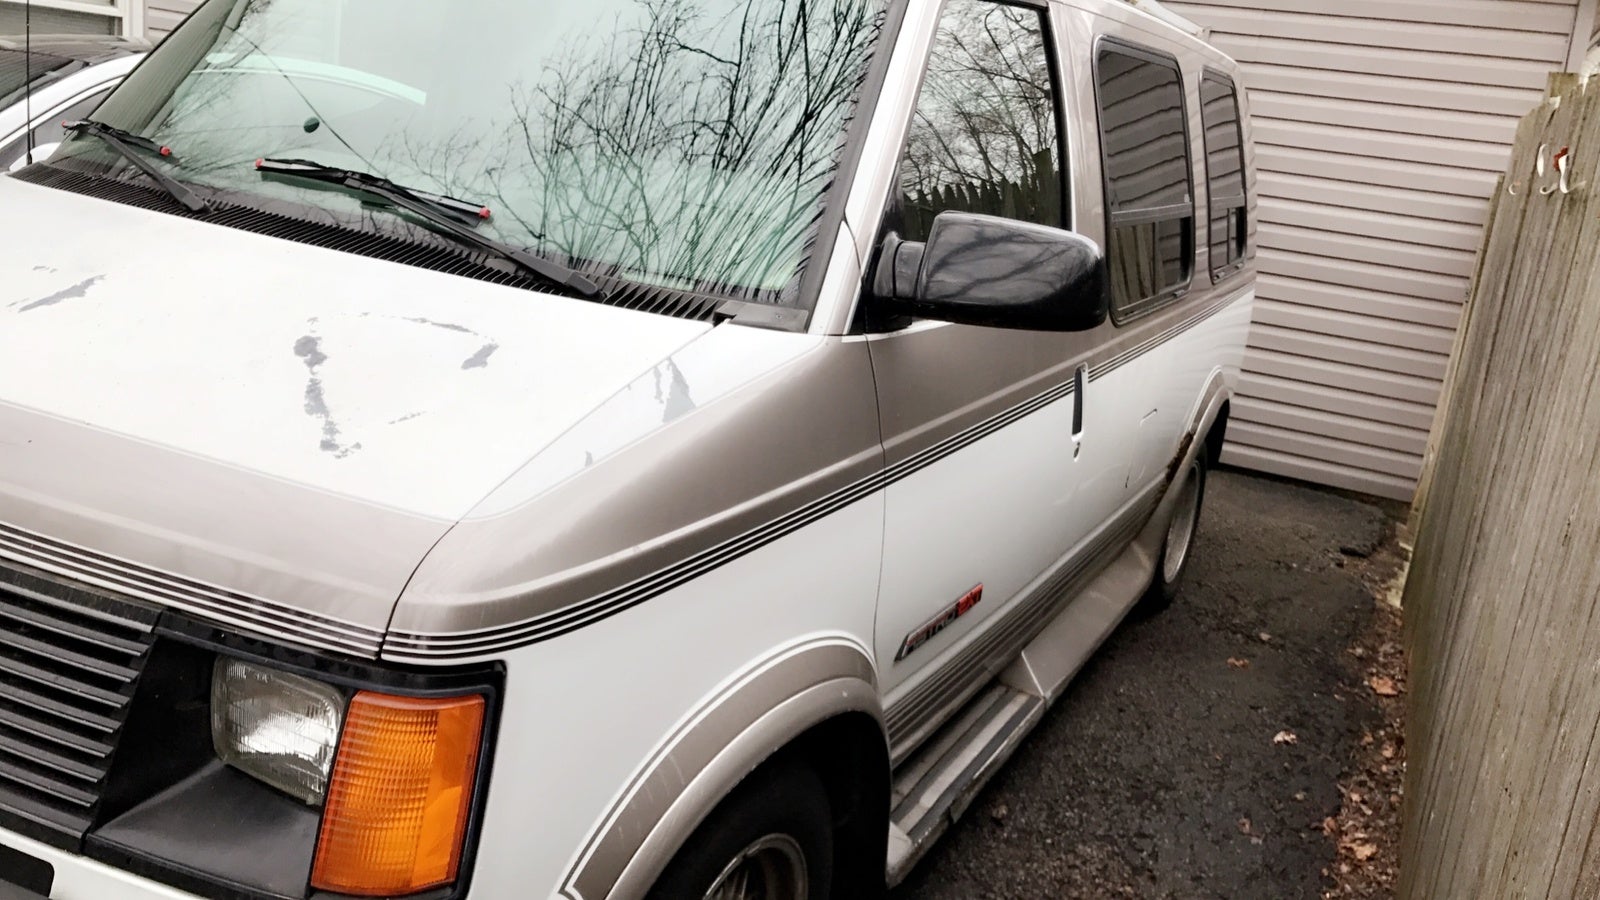 1994 astro van for sale